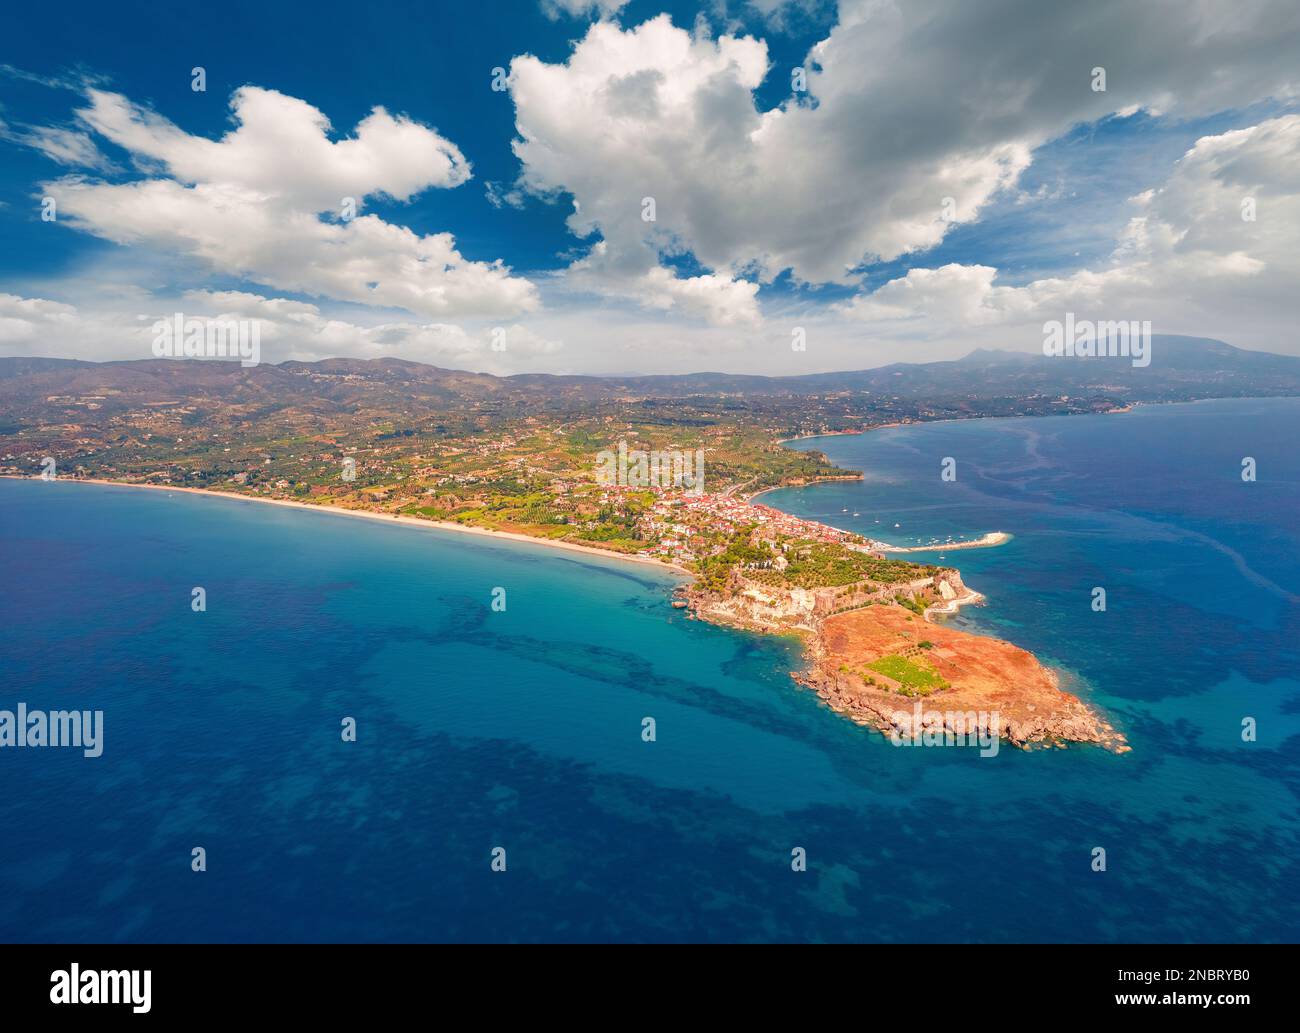 Luftaufnahme der Ostküste des Ionina-Meeres. Spektakuläre Aussicht von der fliegenden Drohne auf Koroni, Messenia, Peloponnes, Griechenland, Europa. Reisekonzept b Stockfoto